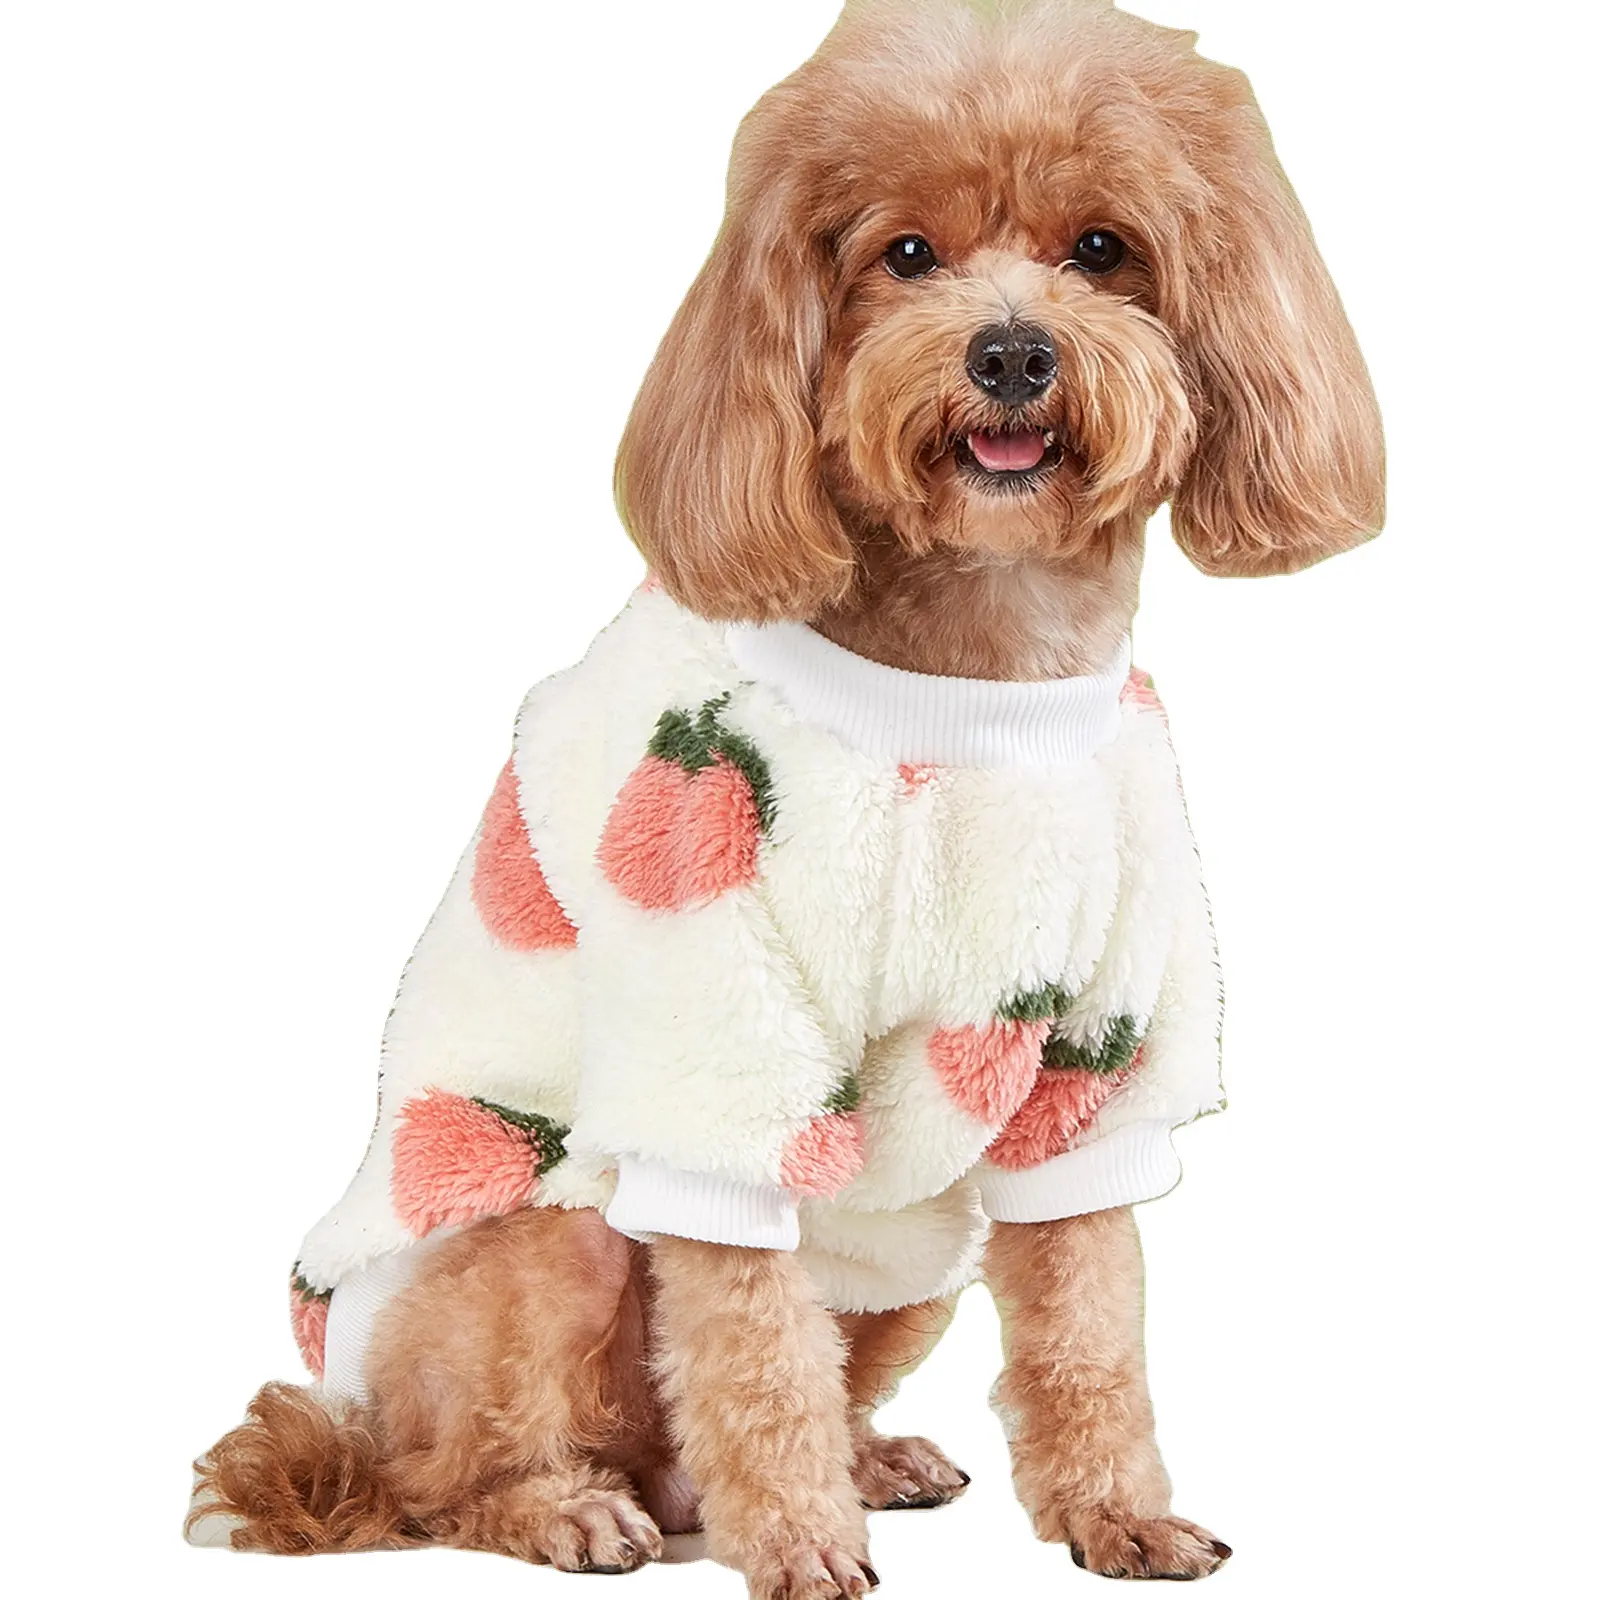 애완 동물 옷 따뜻한 두꺼운 개 의류 흰색 핑크 복숭아 패턴 양털 작은 개 겨울 코트